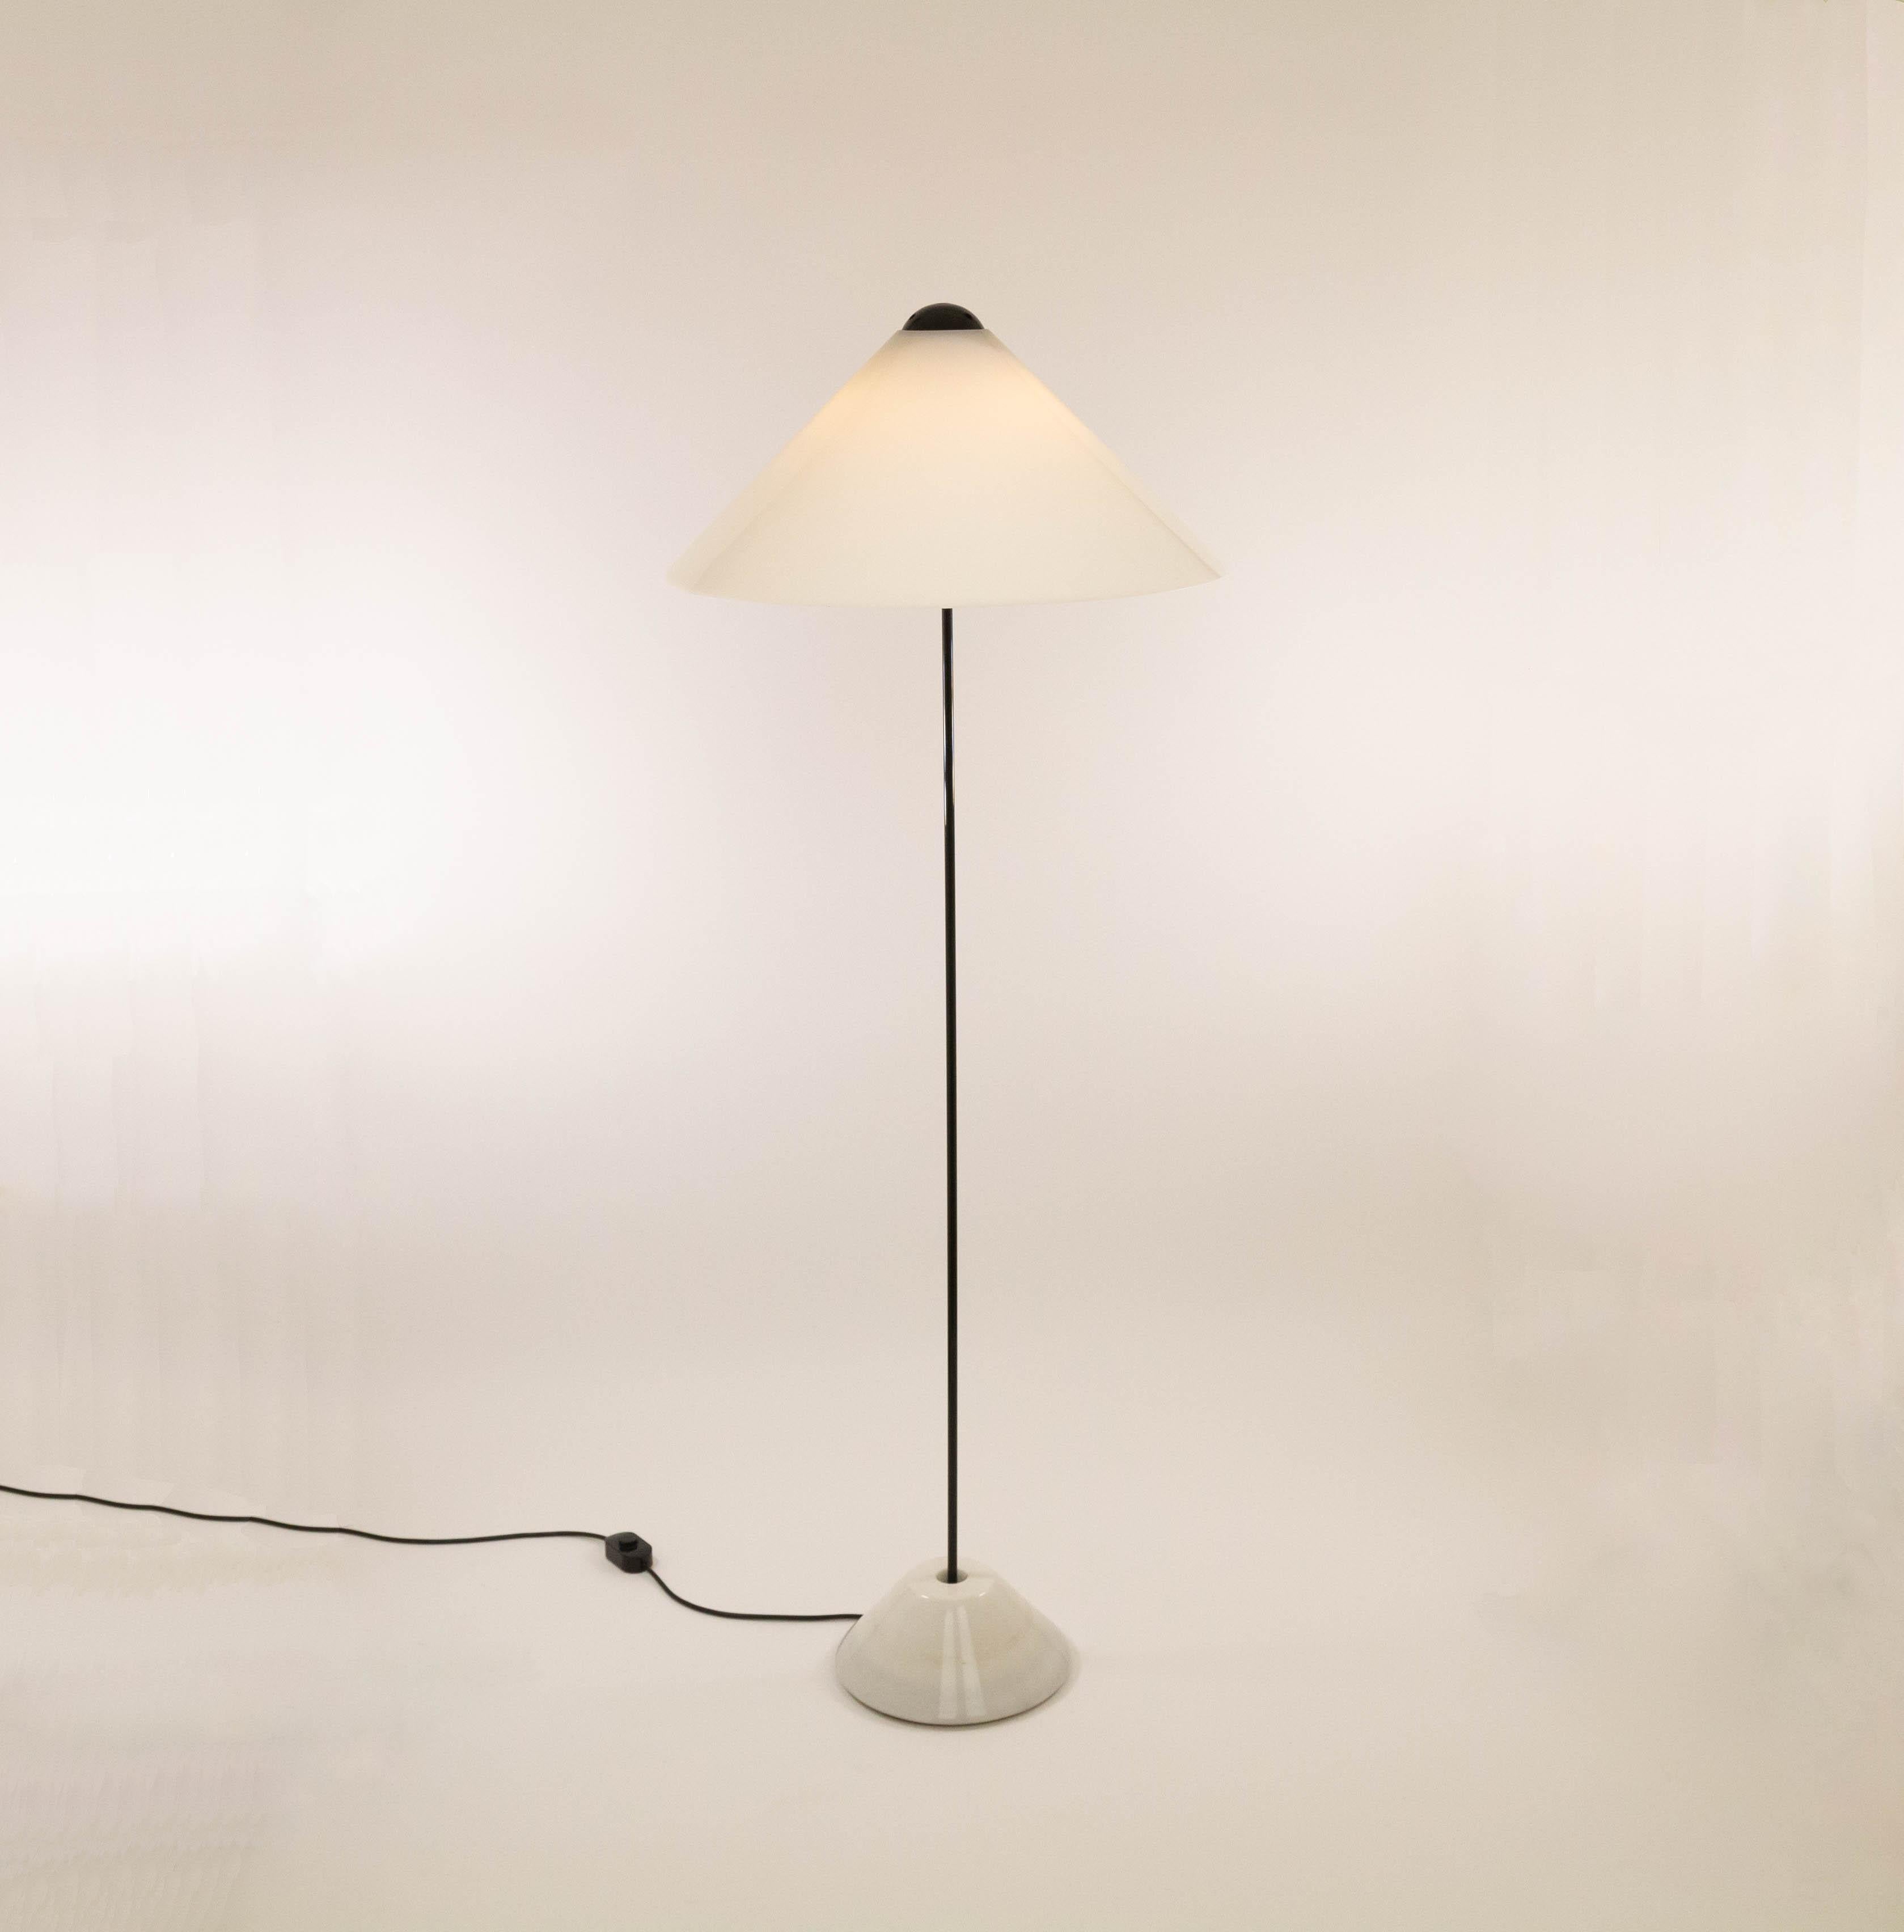 Lampadaire Snow 301/C conçu par Vico Magistretti et fabriqué par O-Luce en 1973.

Ce lampadaire fait partie de la série Snow, composée d'une suspension, d'une lampe de table et de ce lampadaire. Selon l'Archivio Vico Magistretti : 